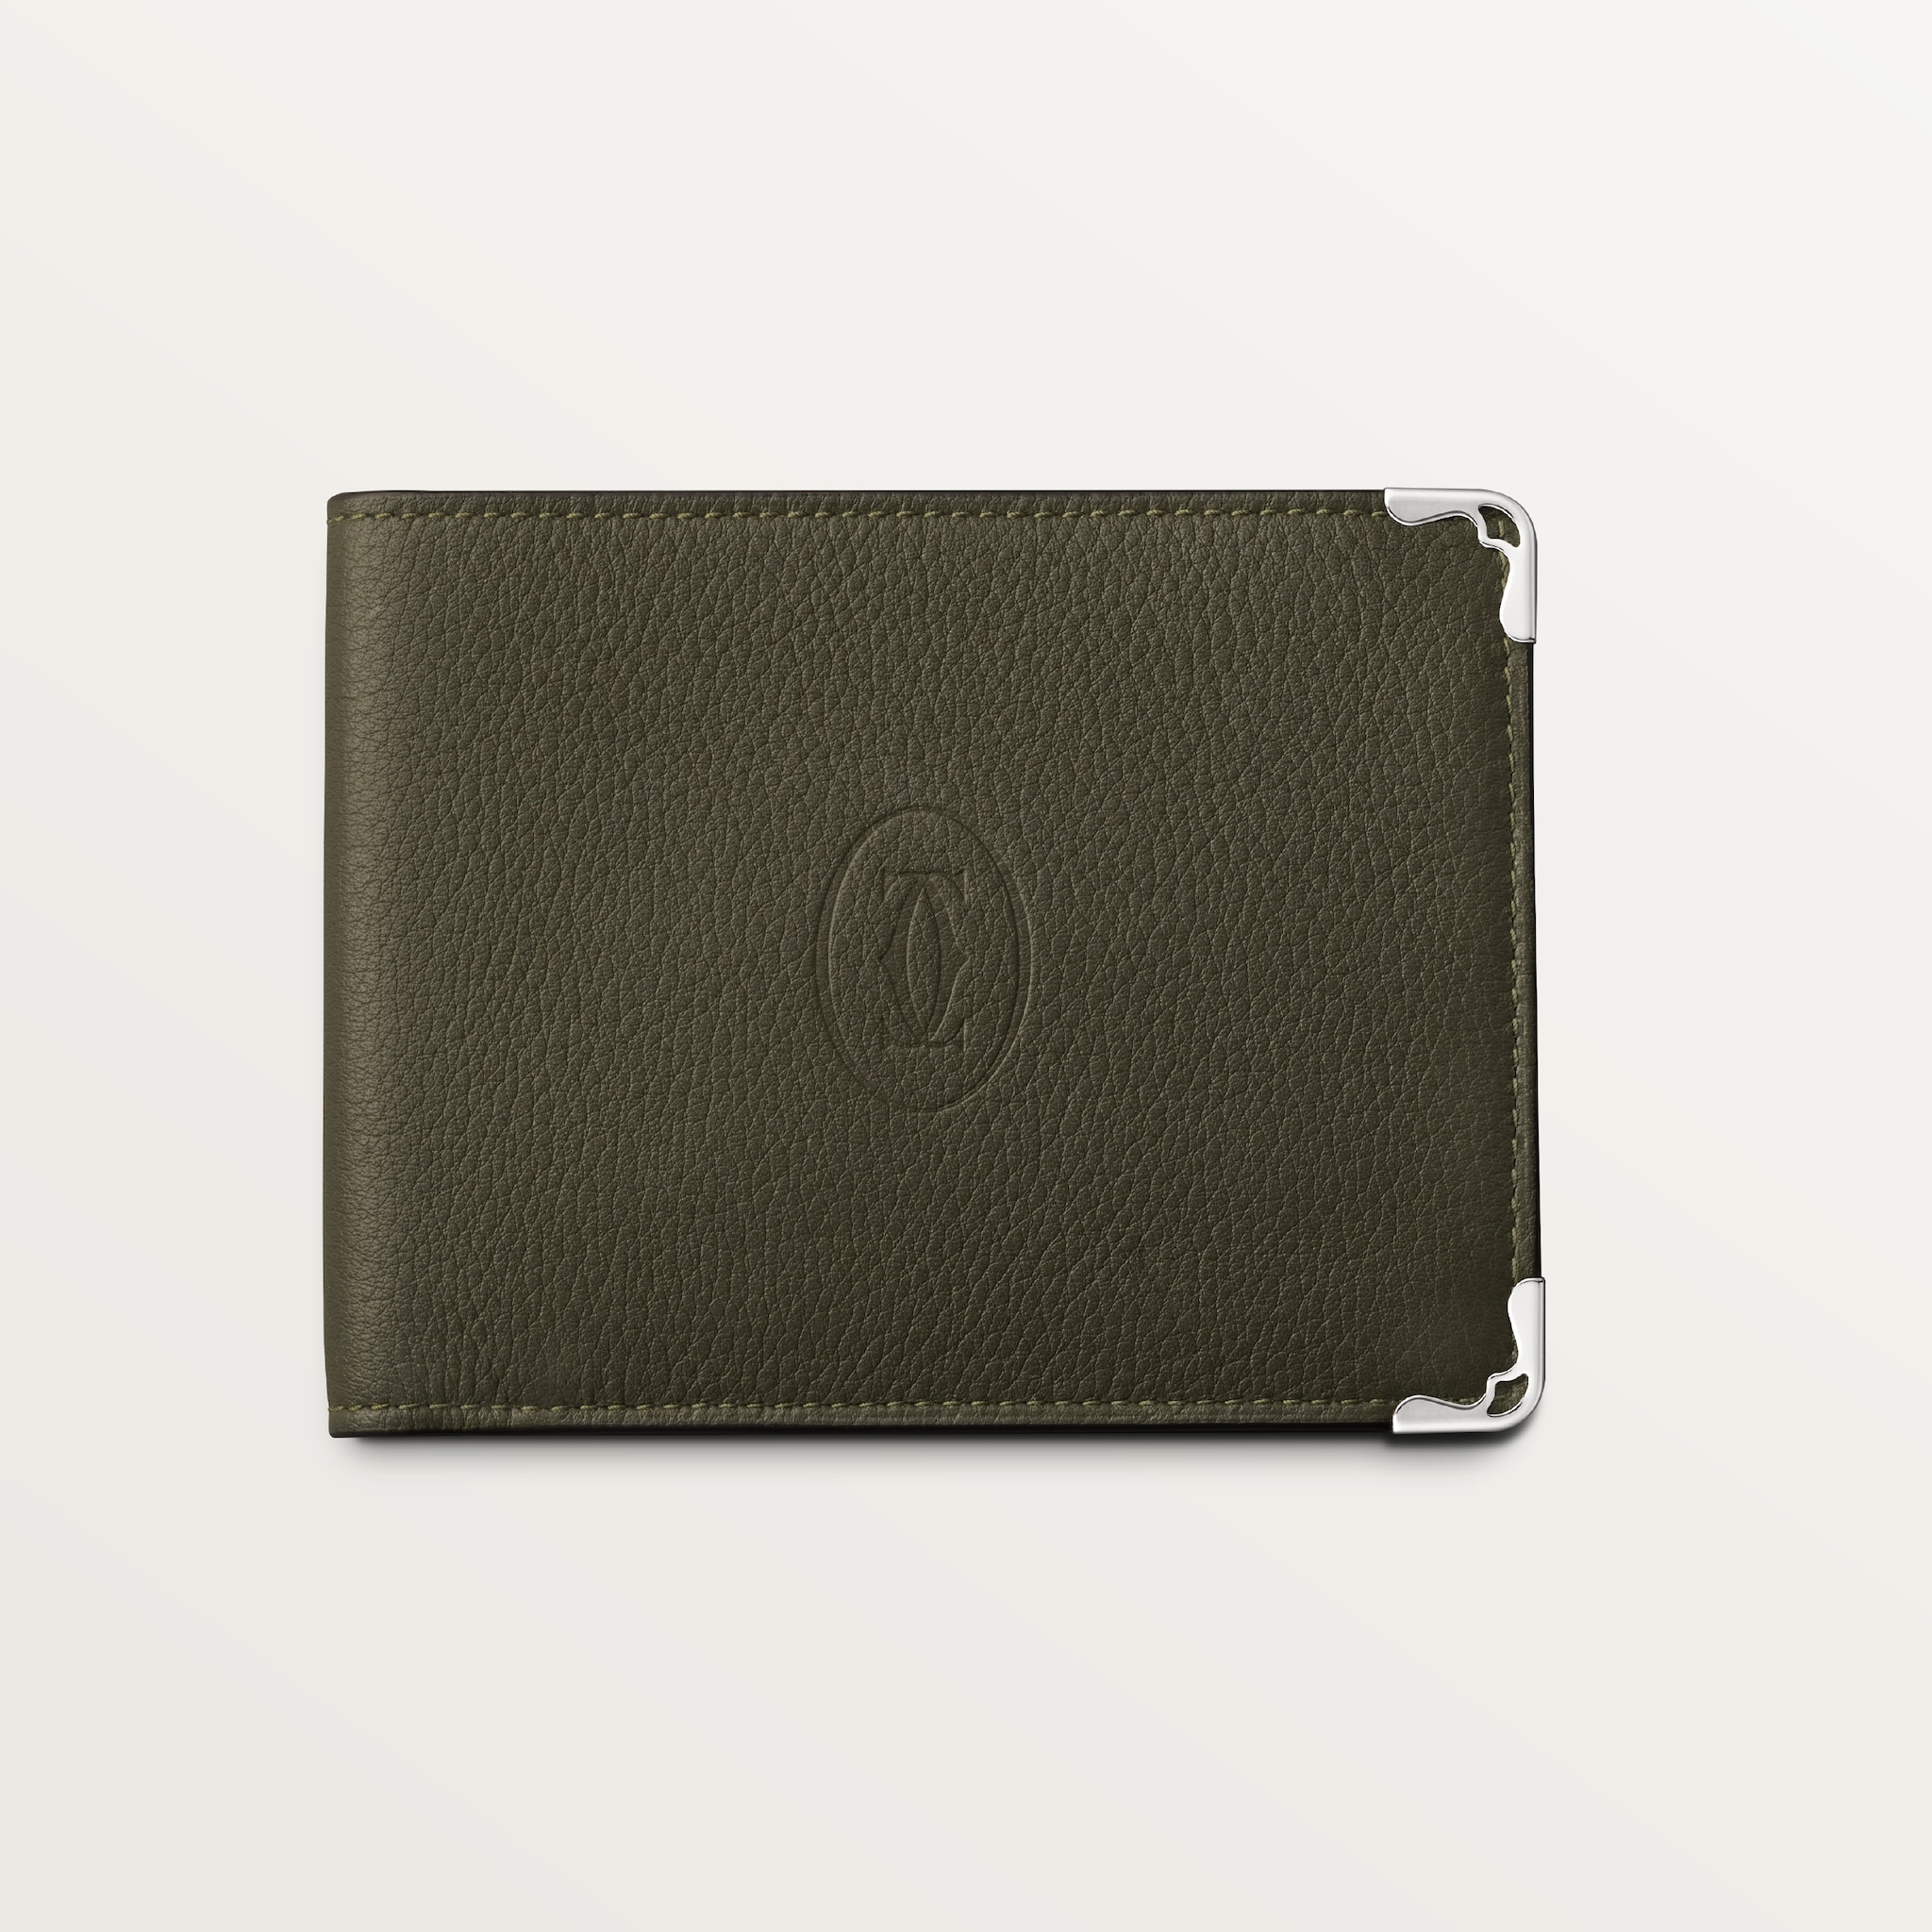 Six-card compact wallet, Must de CartierKhaki calfskin, palladium finish